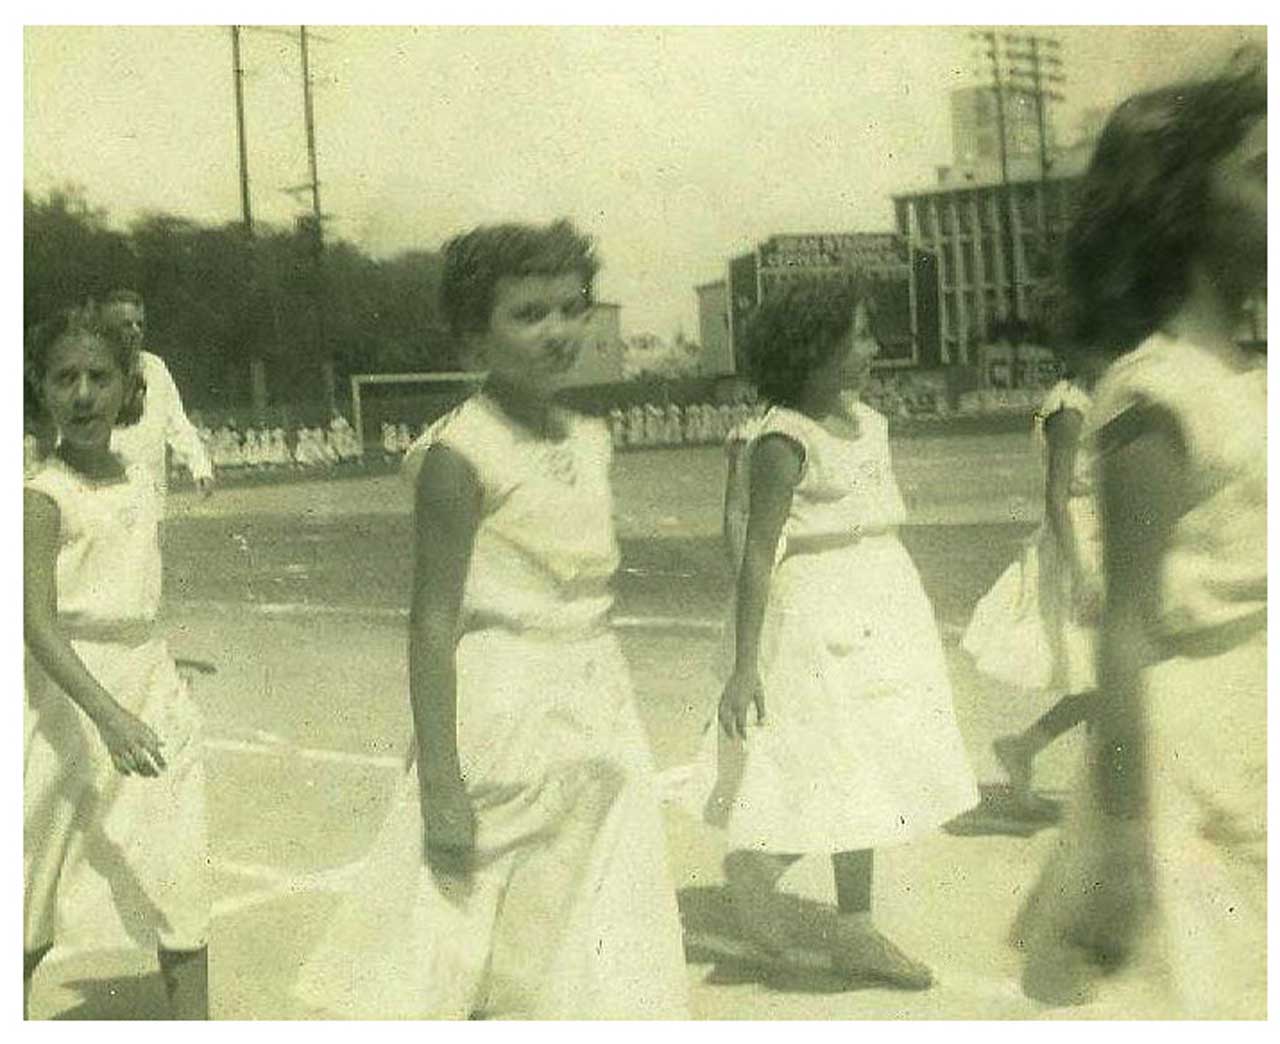 Ejercicios gimnásticos realizados en el plantel Concepción Arenal del Centro Gallego de La Habana. En primer término Mª Dolores Ferreiro Mouriz, autora de un relato (III Premio Memoria de la Emigración)